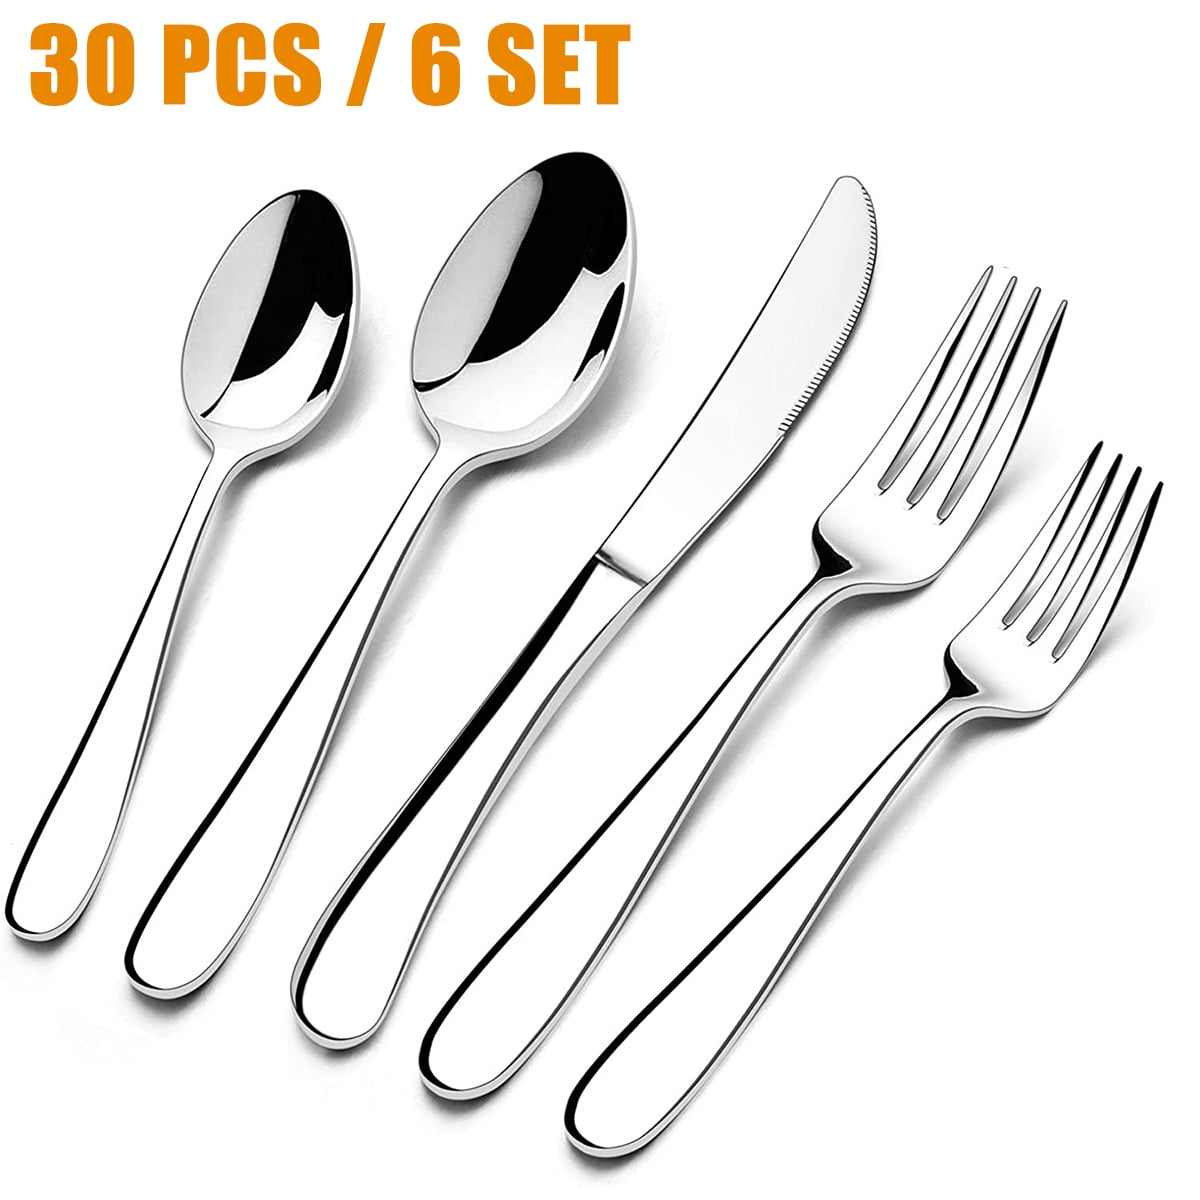 Classic Elegant Design HaWare 12-Pieces Stainless Steel Forks Dinner Forks Mirror Polished Dishwasher Safe 